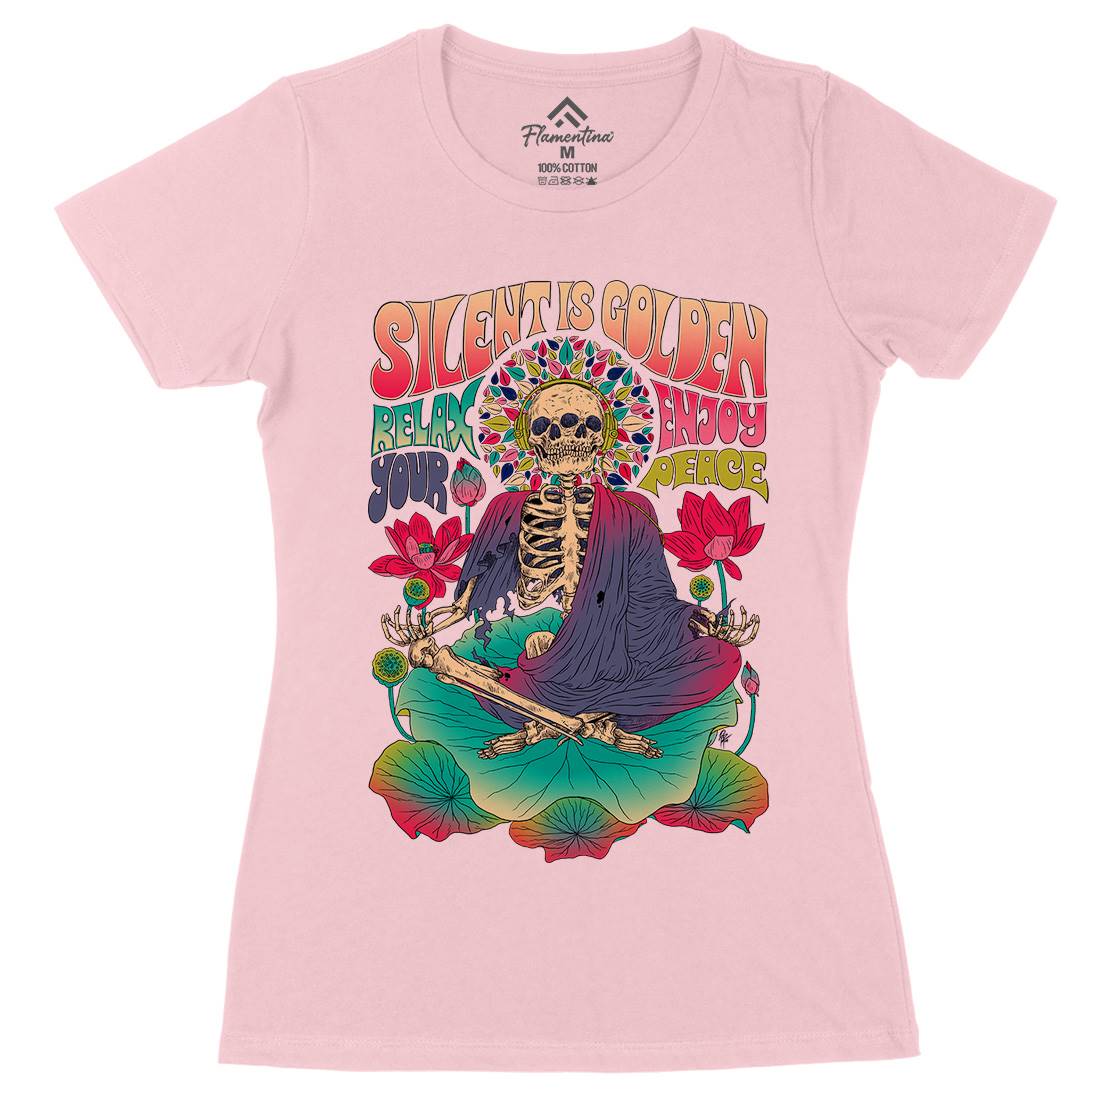 Silent Is Golden Womens Organic Crew Neck T-Shirt Peace D080